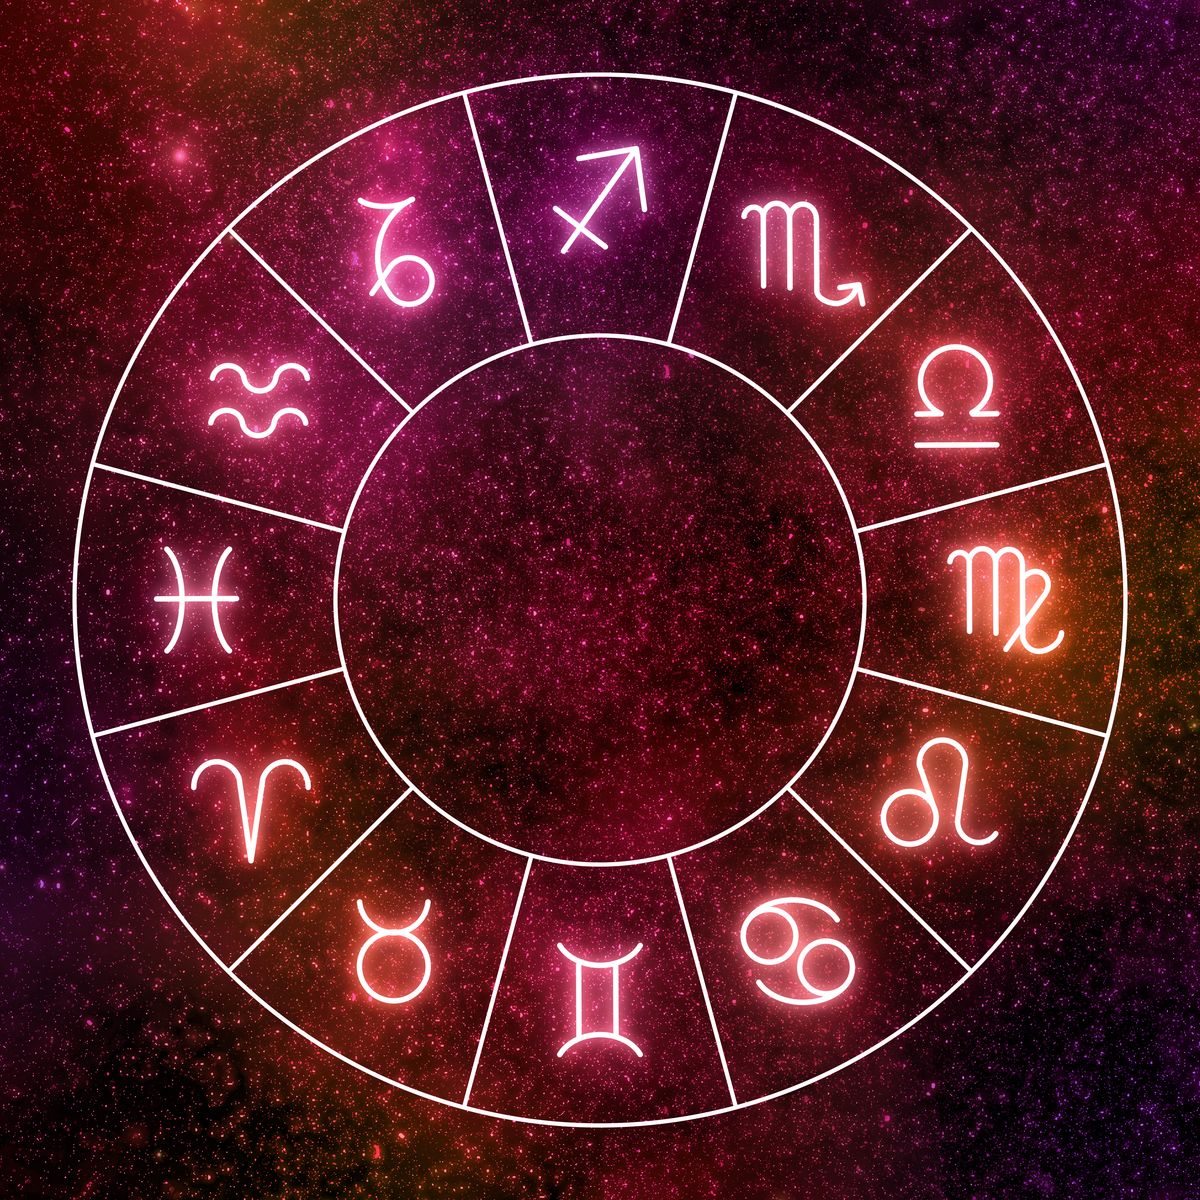 Horoskop tygodniowy dla wszystkich znaków zodiaku. Co cię czeka w tym tygodniu?